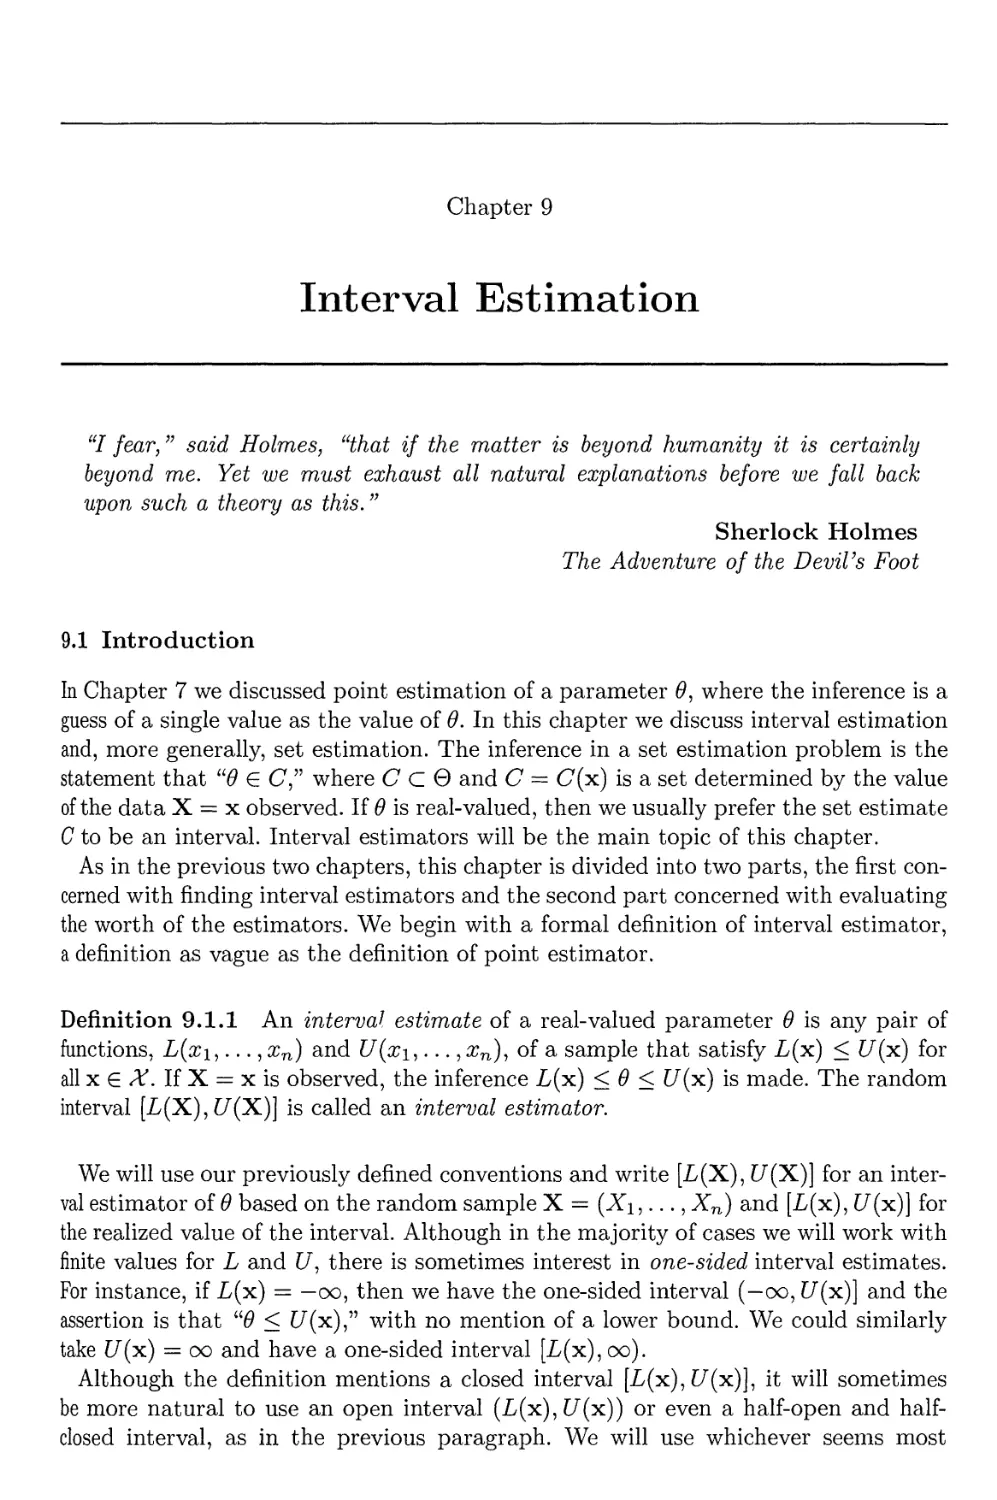 9. Interval Estimation